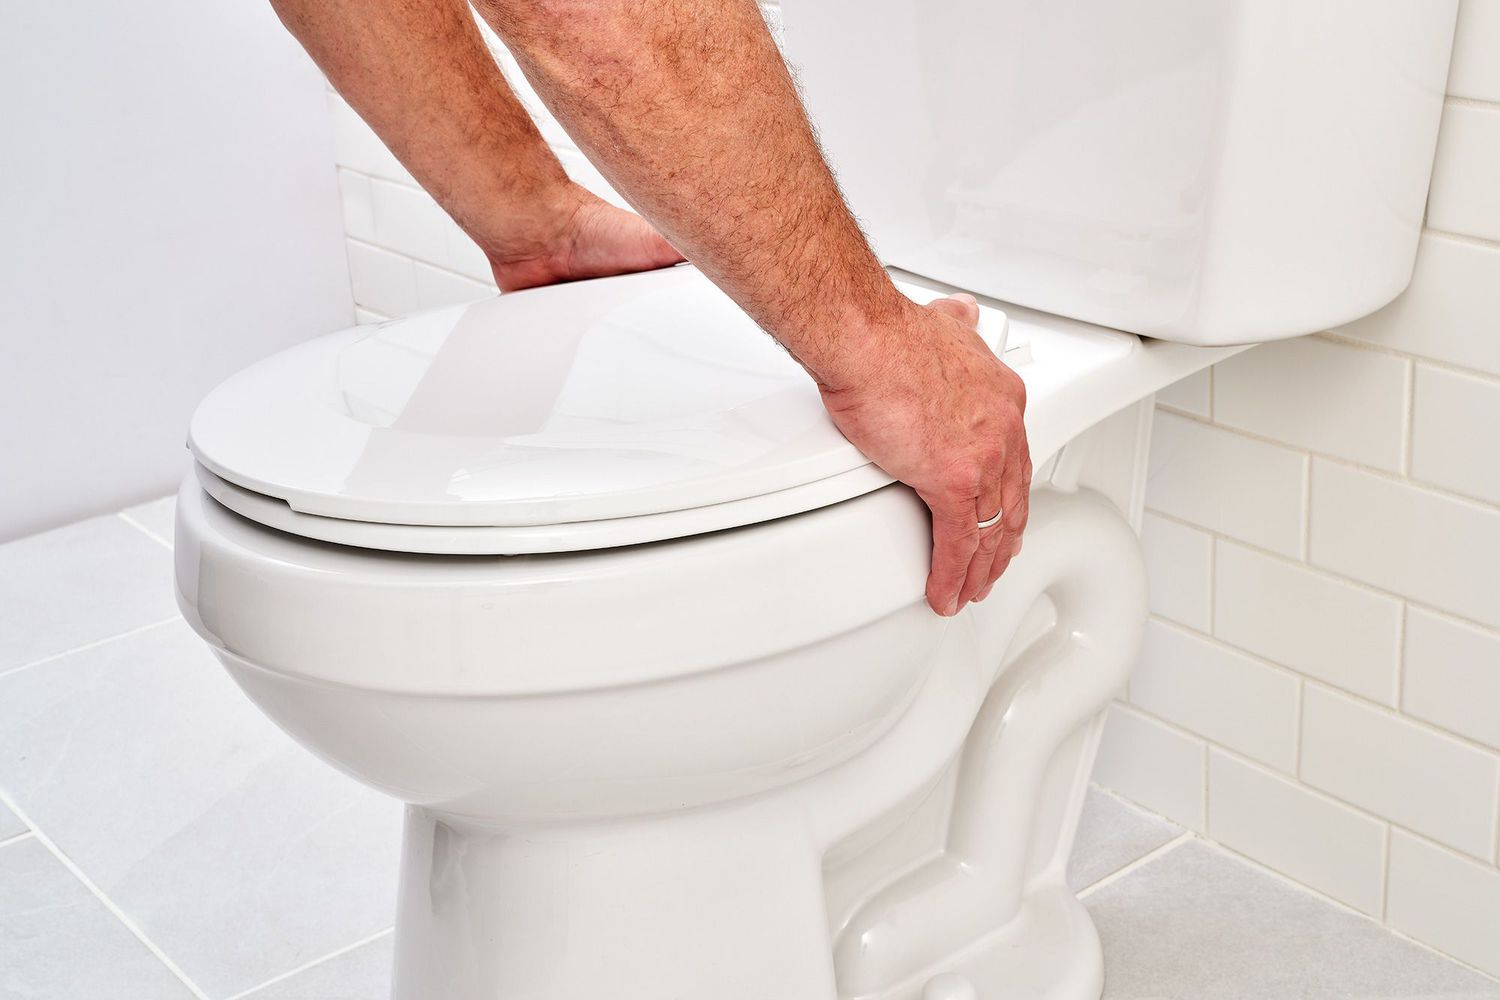 Comment régler correctement une toilette pour éviter les fuites